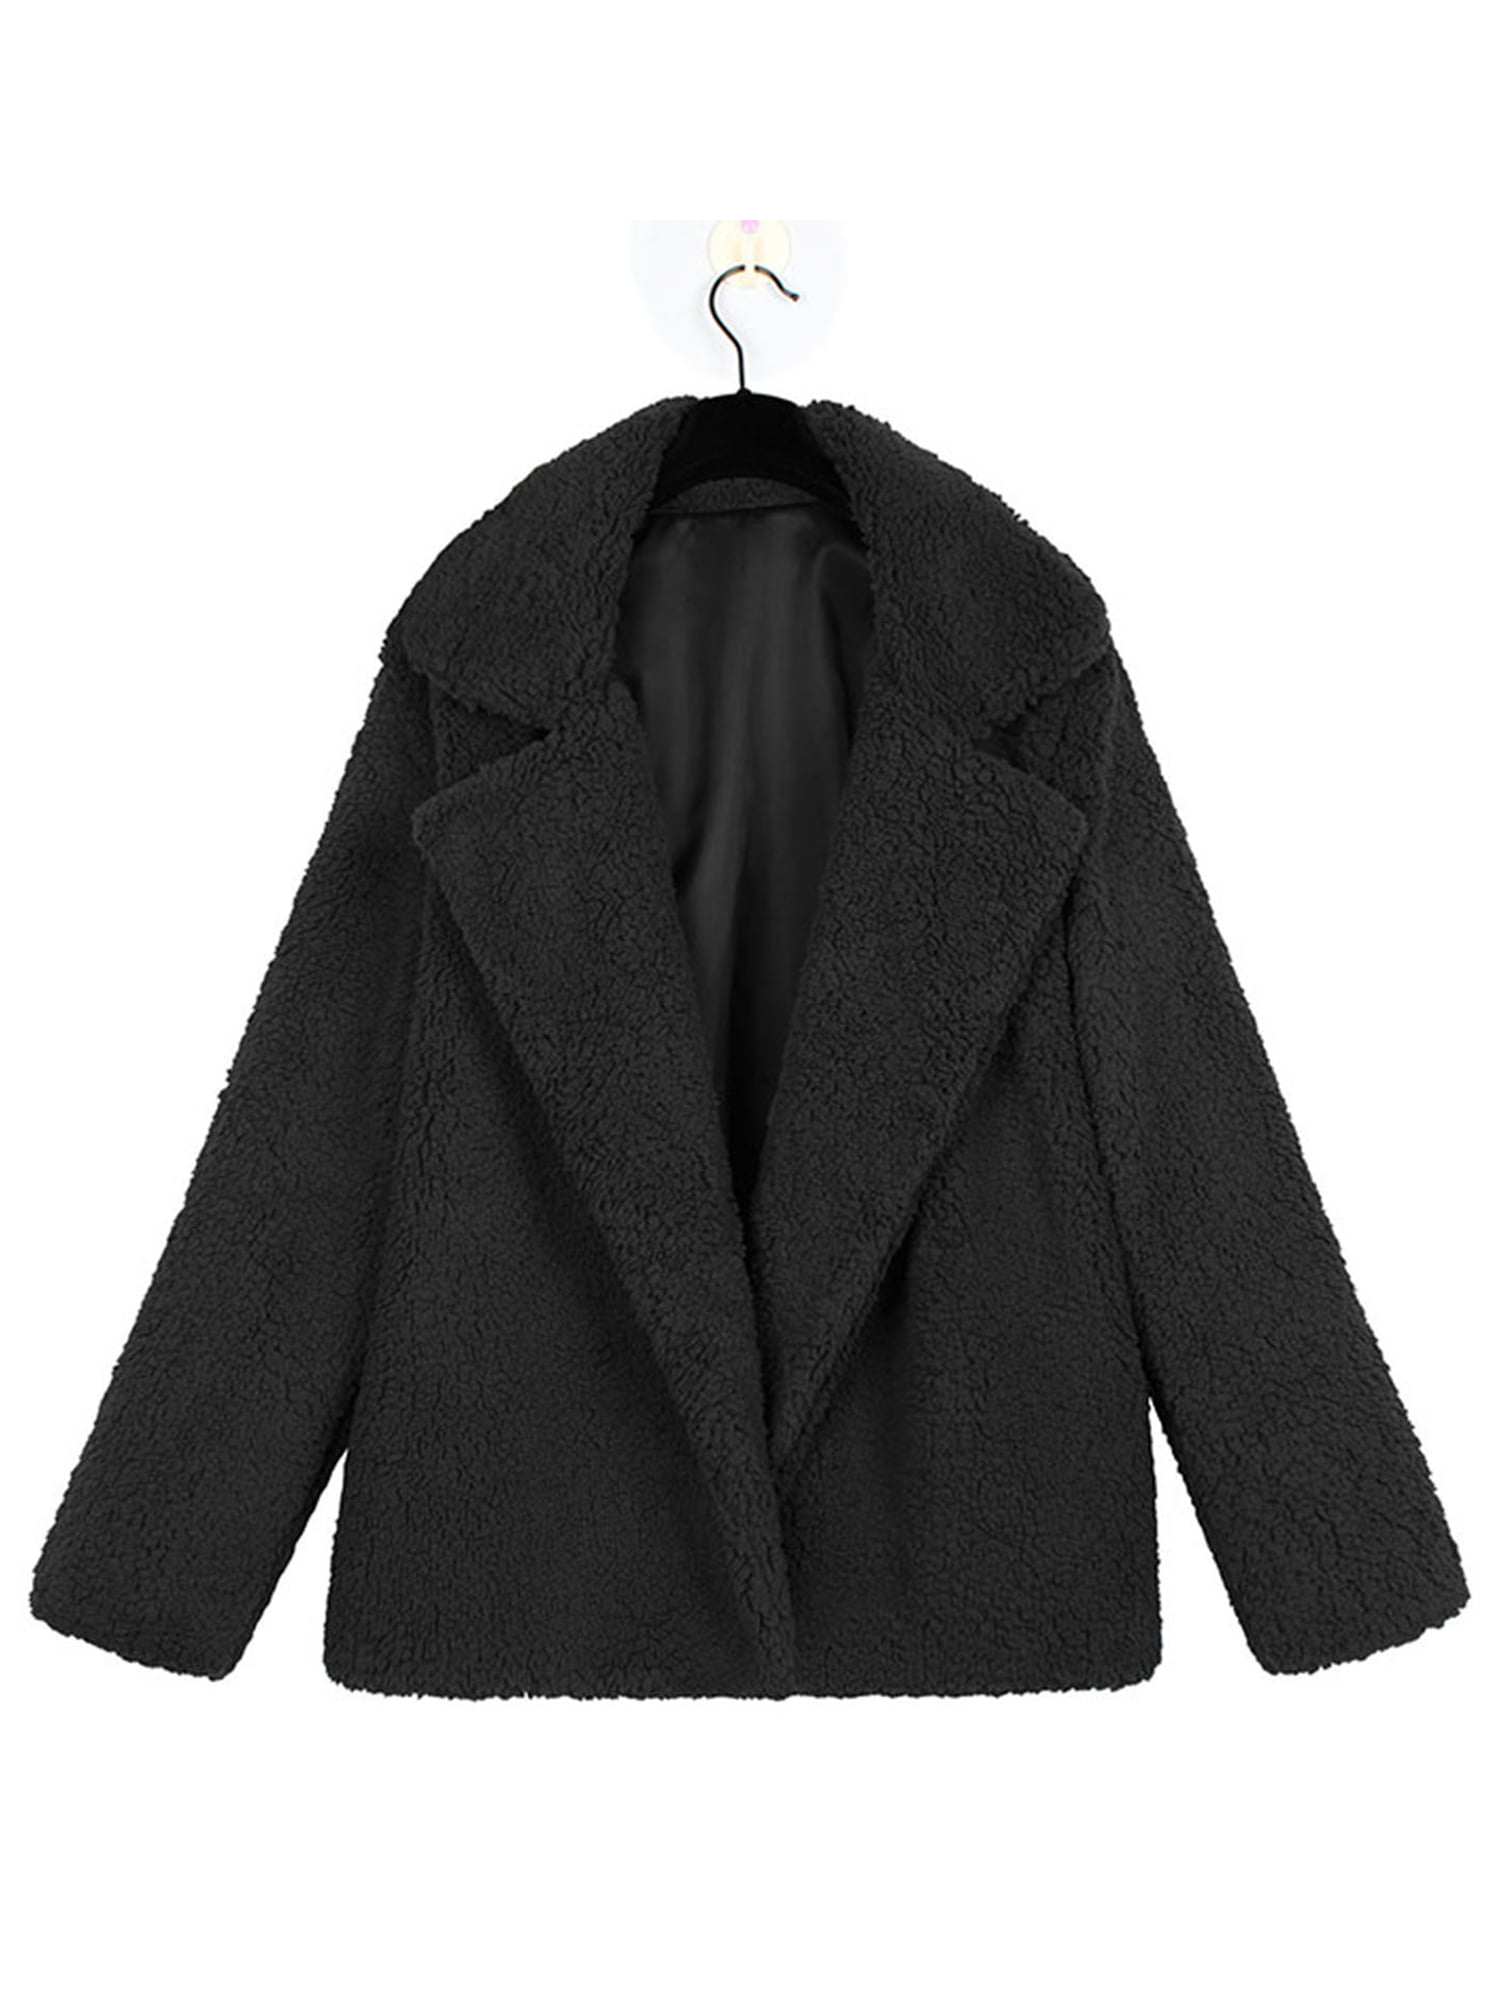 Women's Jacket Casual Lapel Fleece Fuzzy Faux Shearling Zipper Winter ...